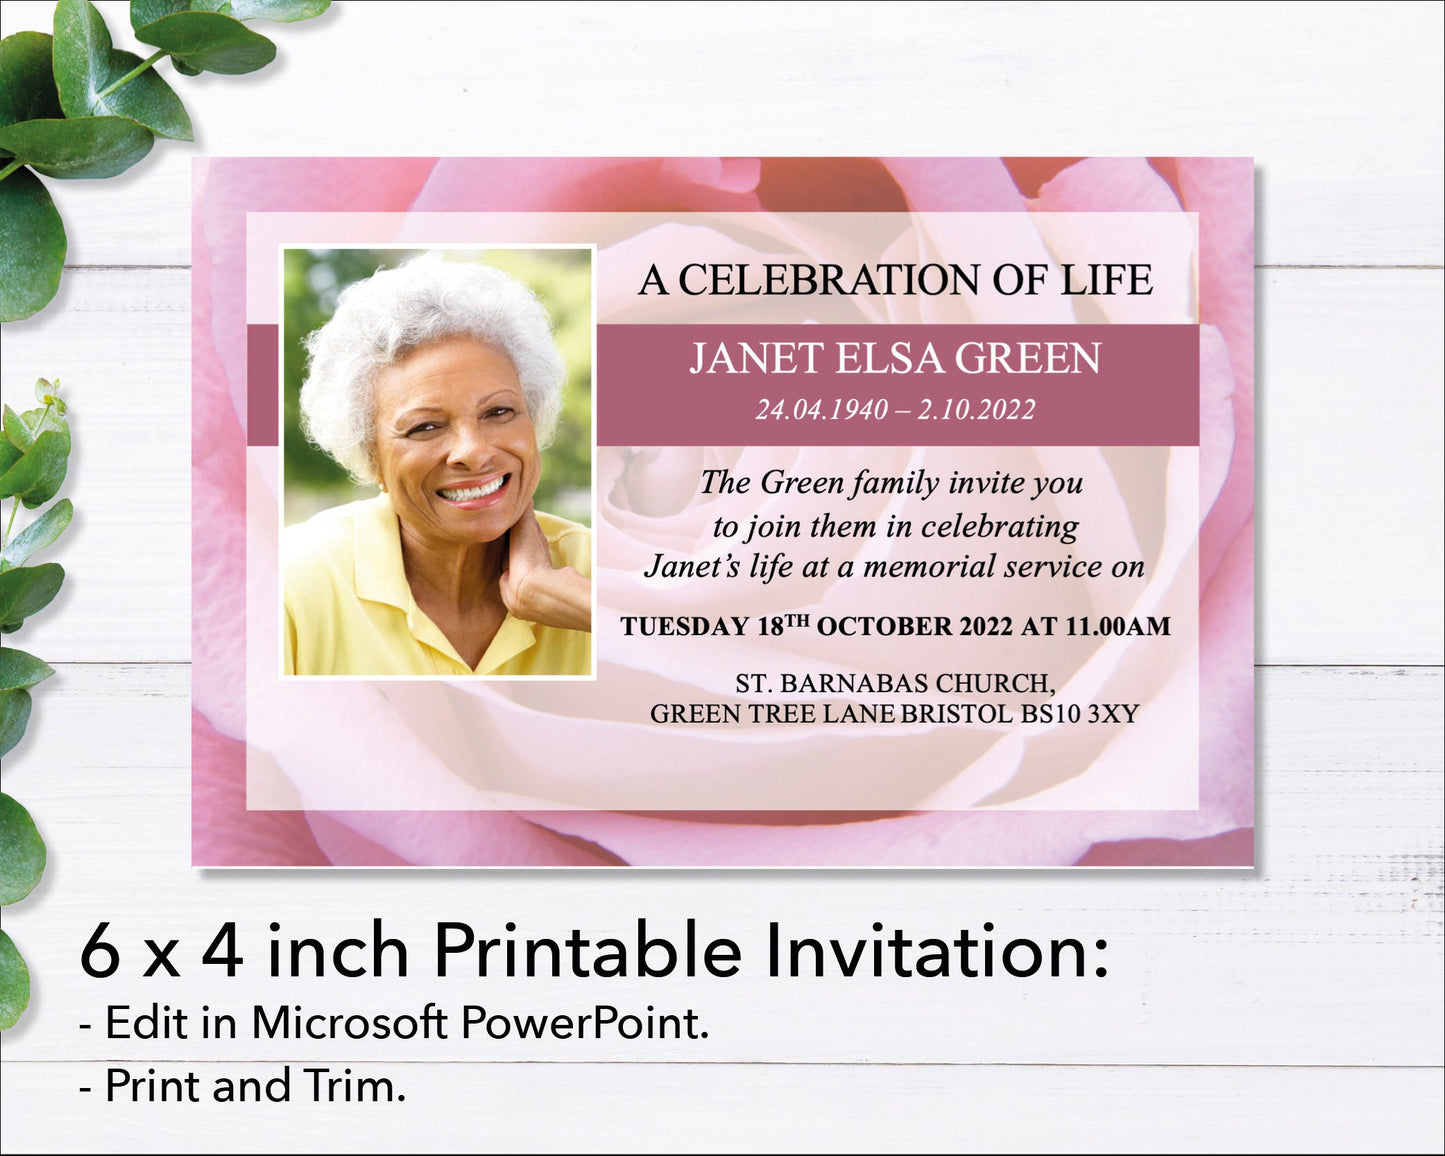 Pink Rose Funeral e-Invite & Invitation Card